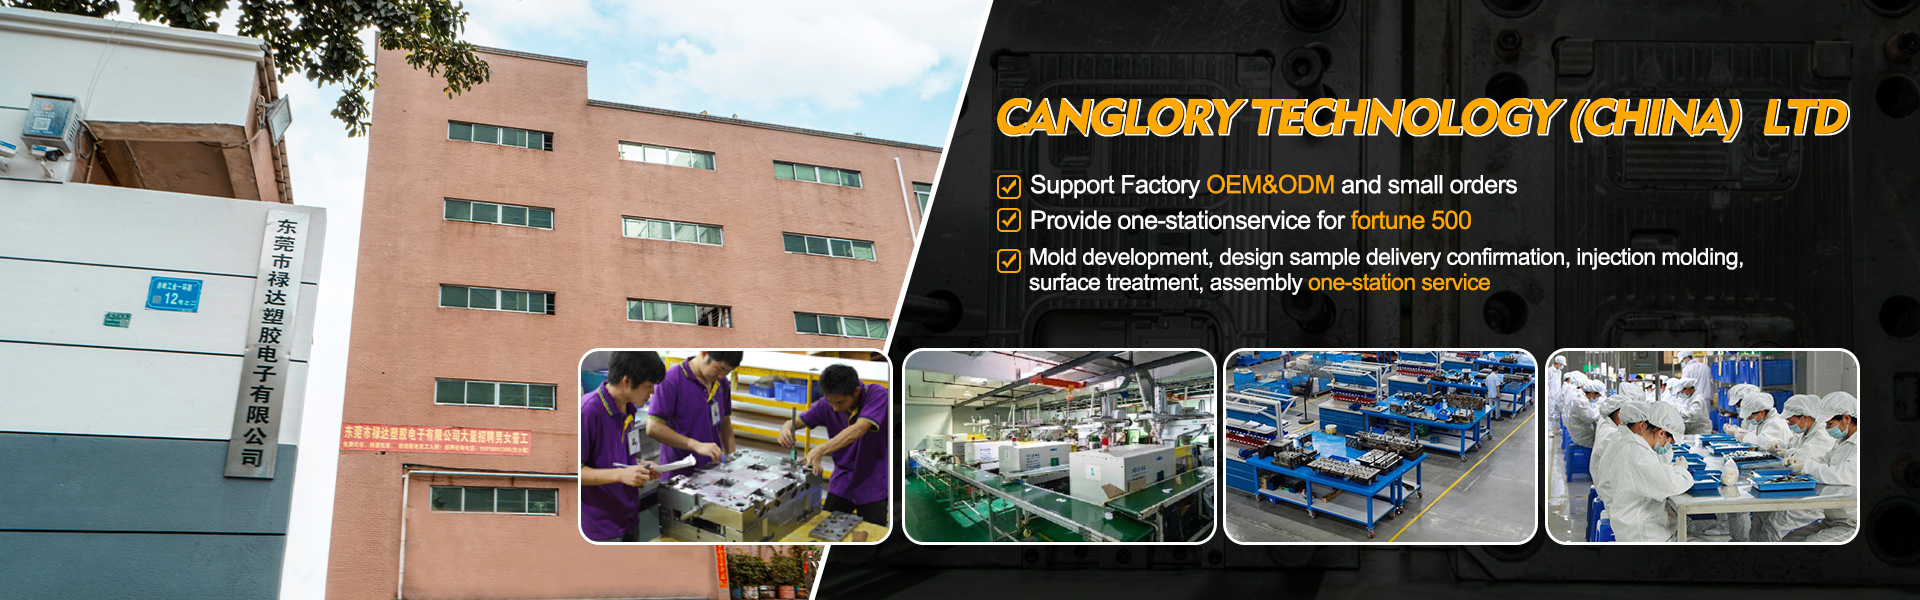 Hem - Gjutning, injektion, tillverkare av originalutrustning|Canglory Technology (China) Ltd